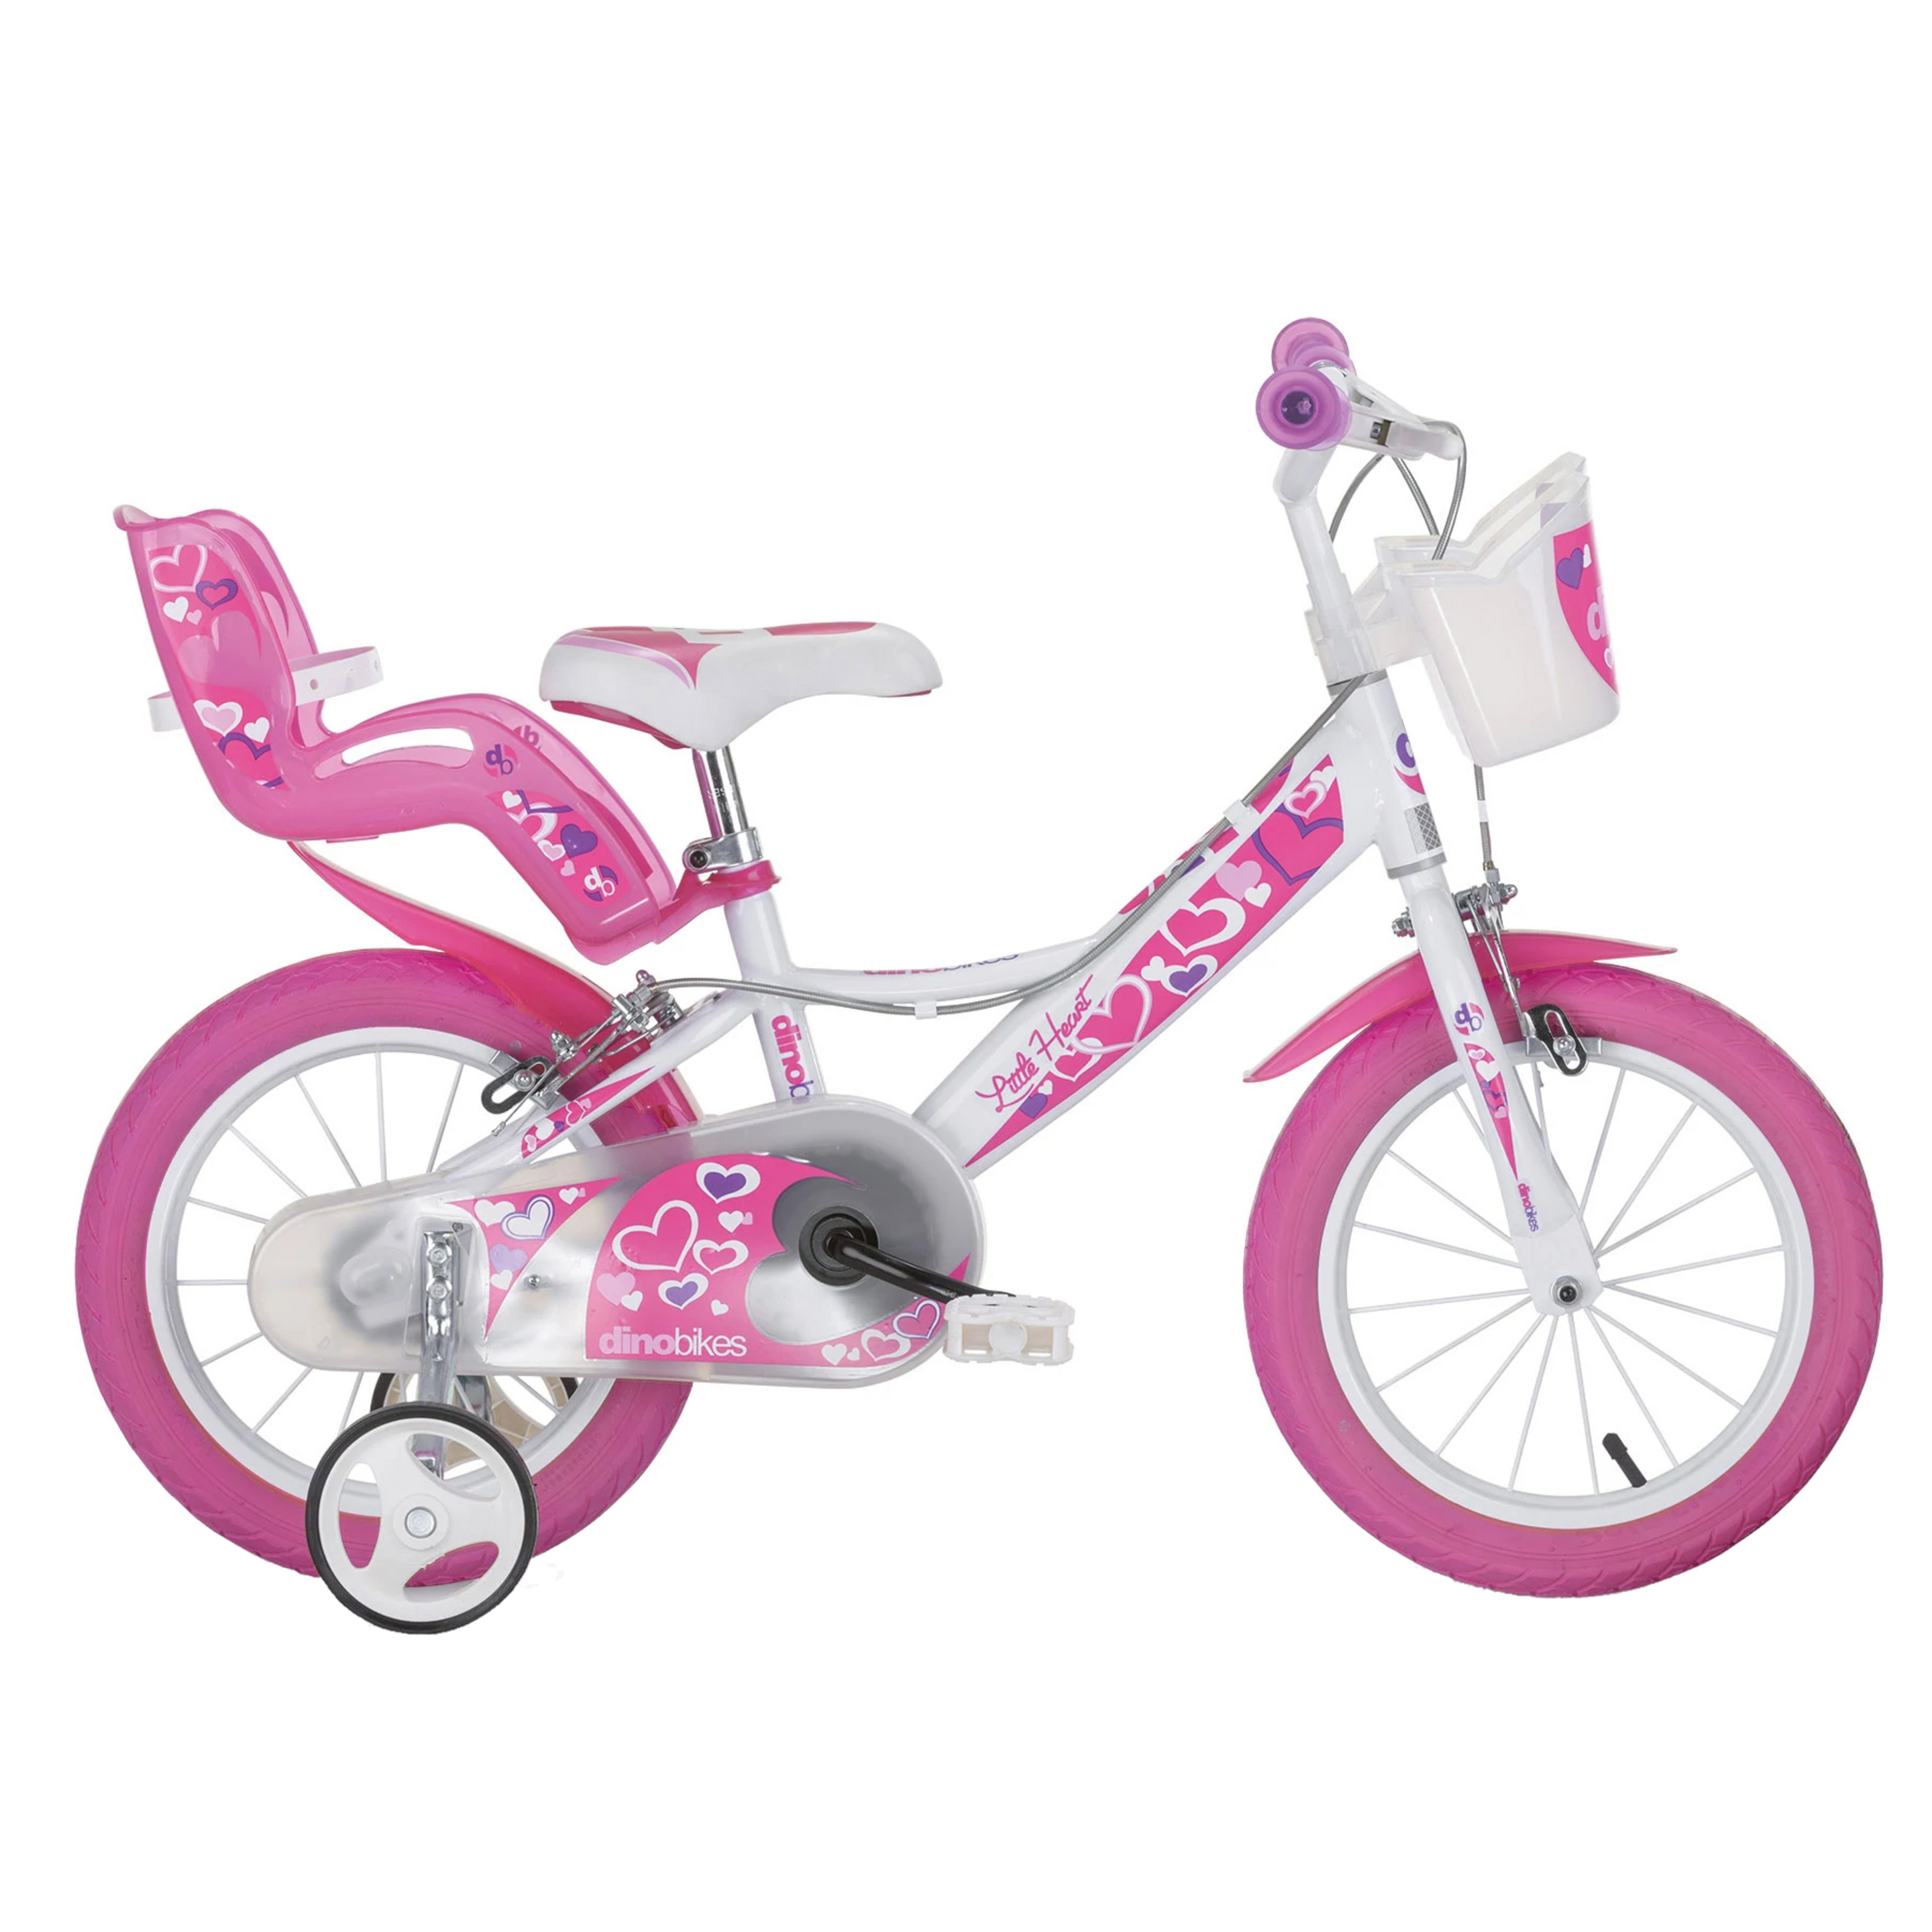 Bicicleta Infantil Hearts 14 Pulgadas - Rosa  MKP